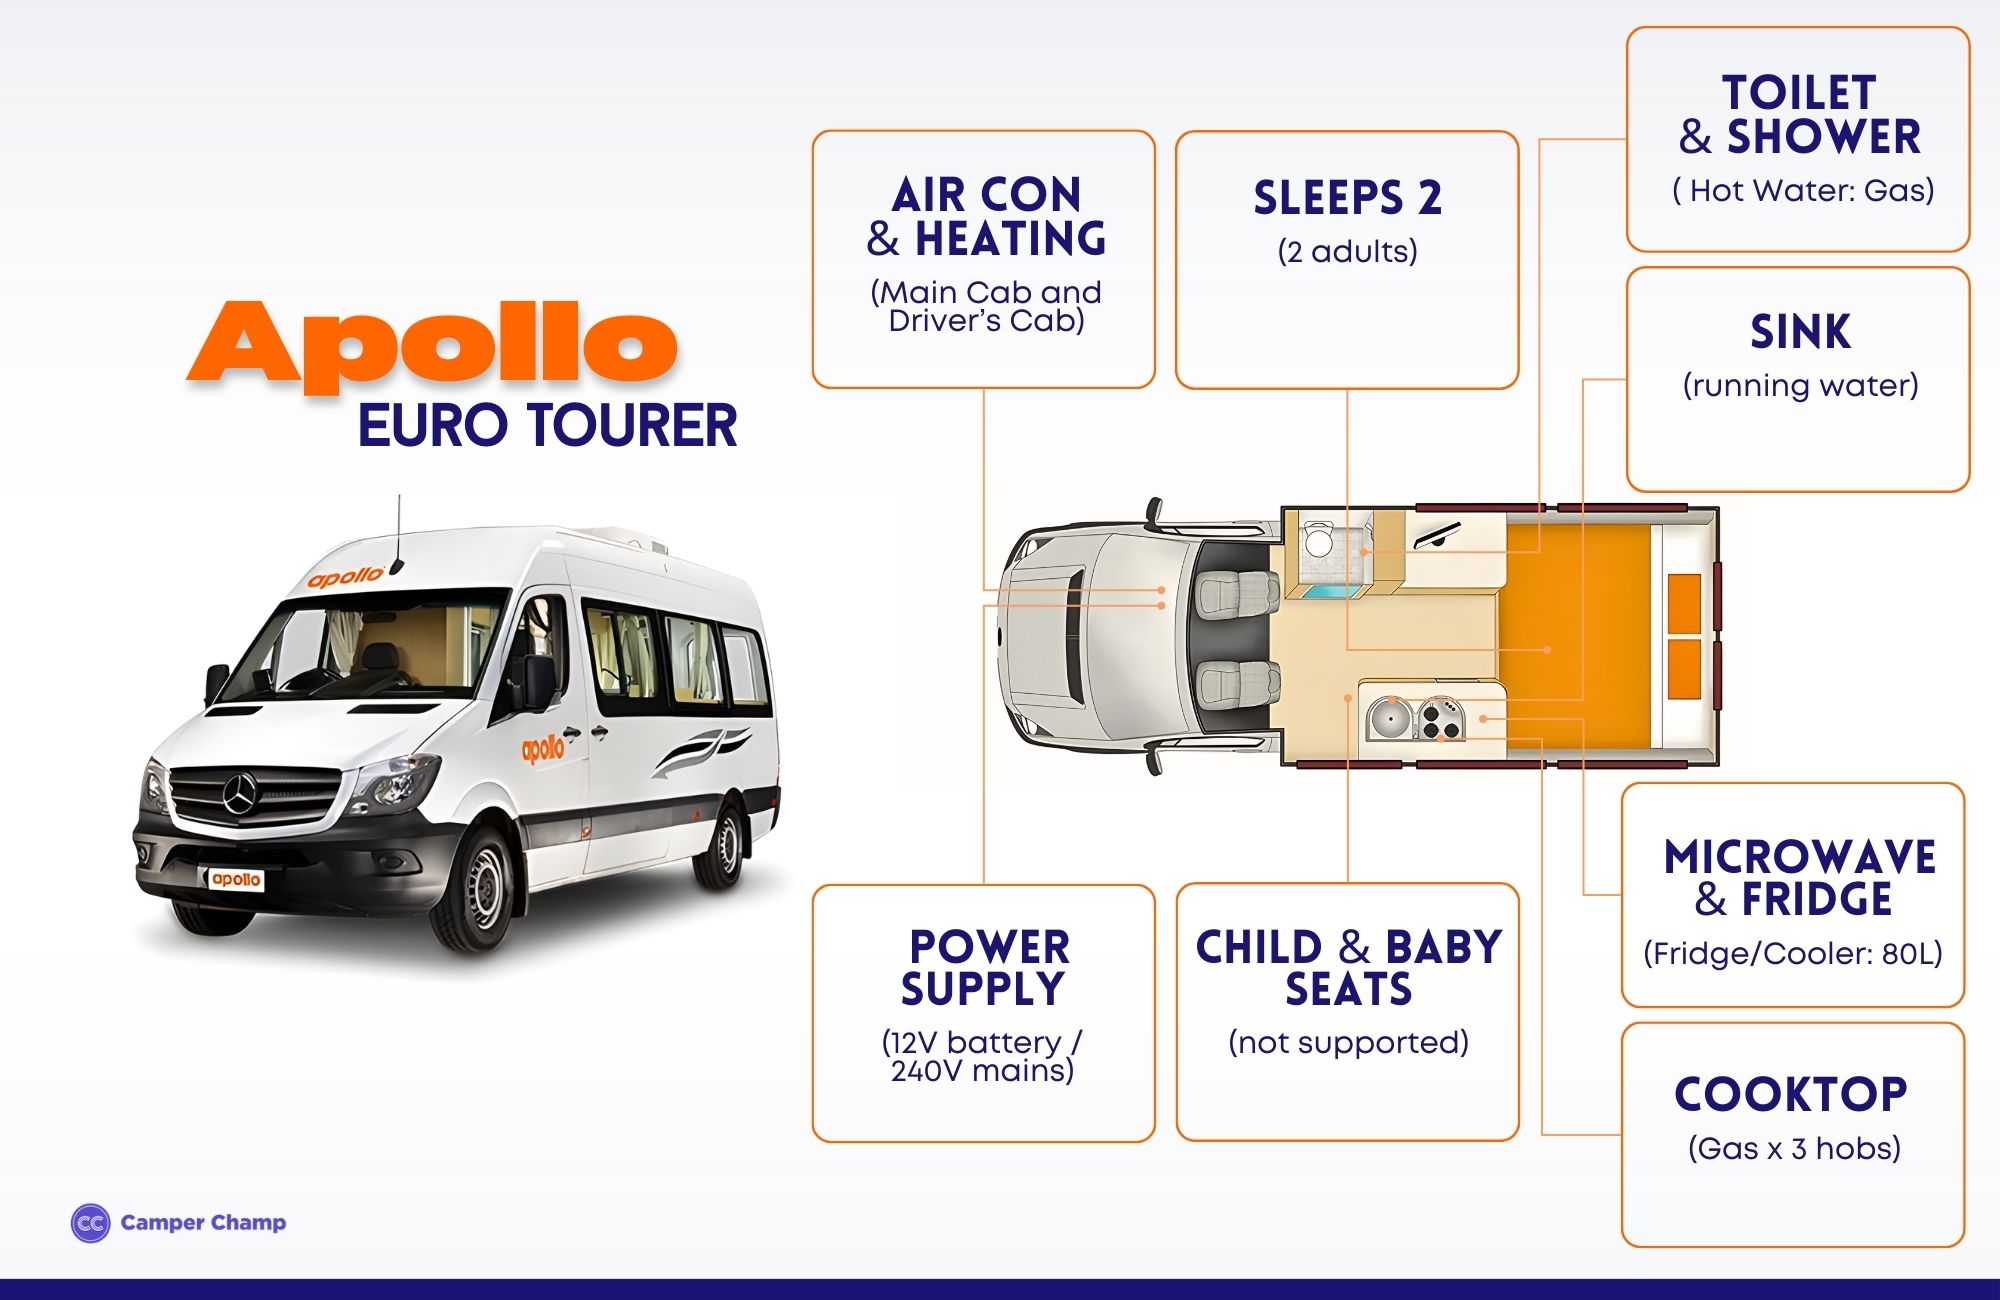 Apollo Euro Tourer